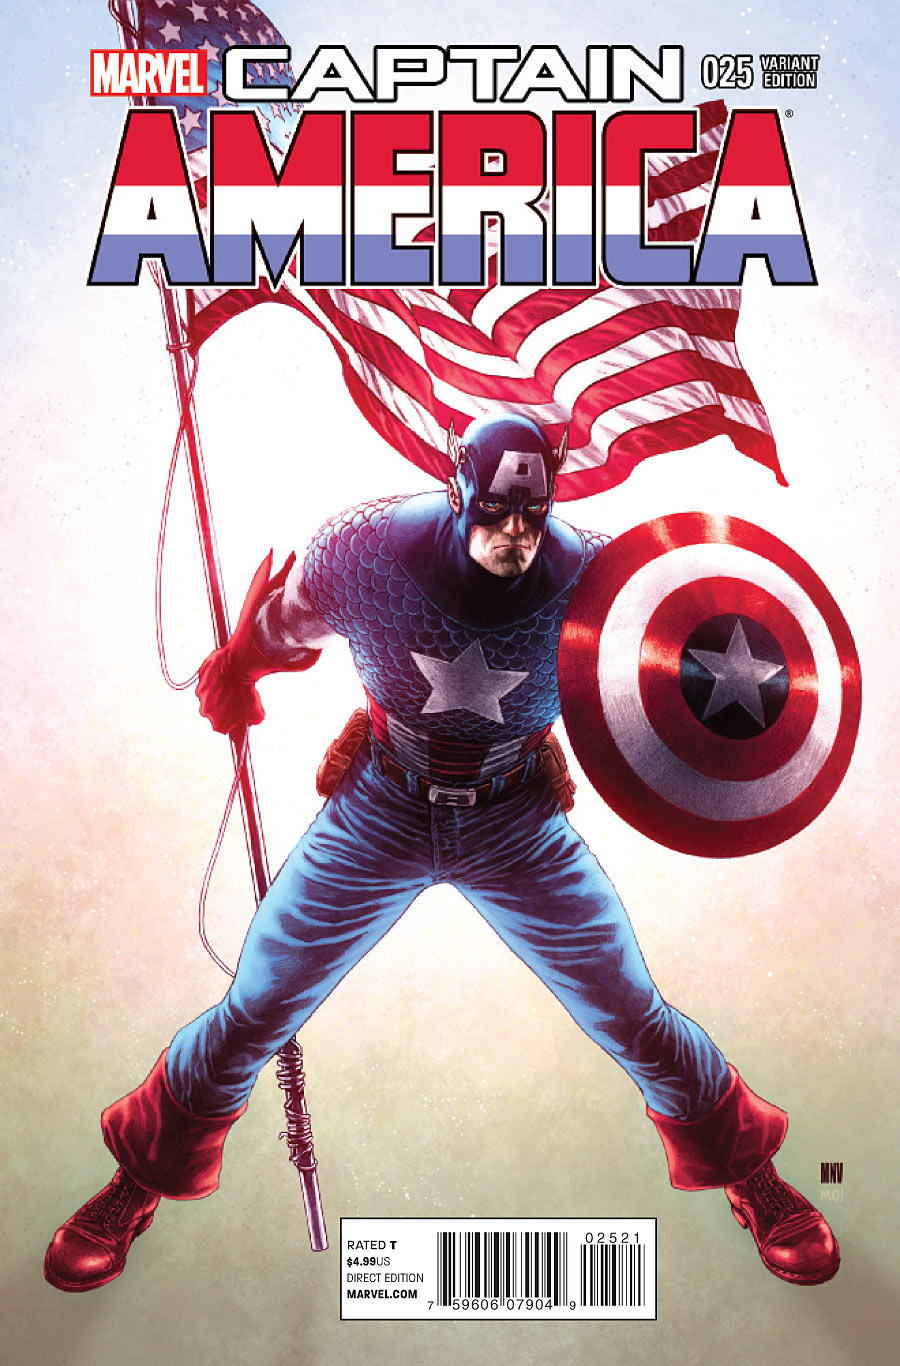 Captain America #25 variant